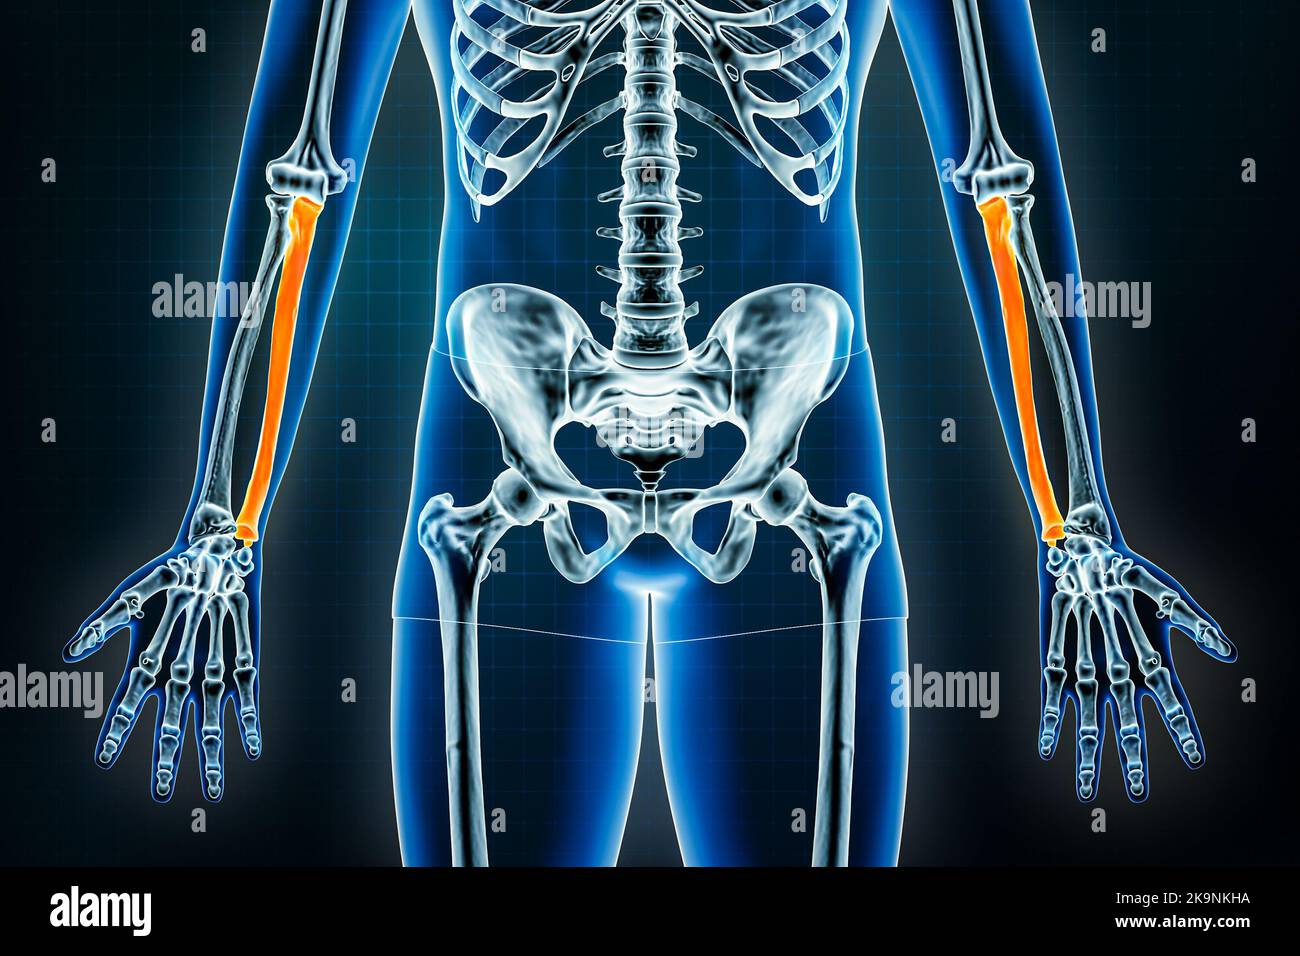 Ulna-Röntgenaufnahme – Vorderansicht oder Vorderansicht. Osteologie des menschlichen Skeletts, des Armes oder der Knochen der oberen Extremitäten 3D Darstellung. Anatomie, Medizin, Wissenschaft, biol Stockfoto